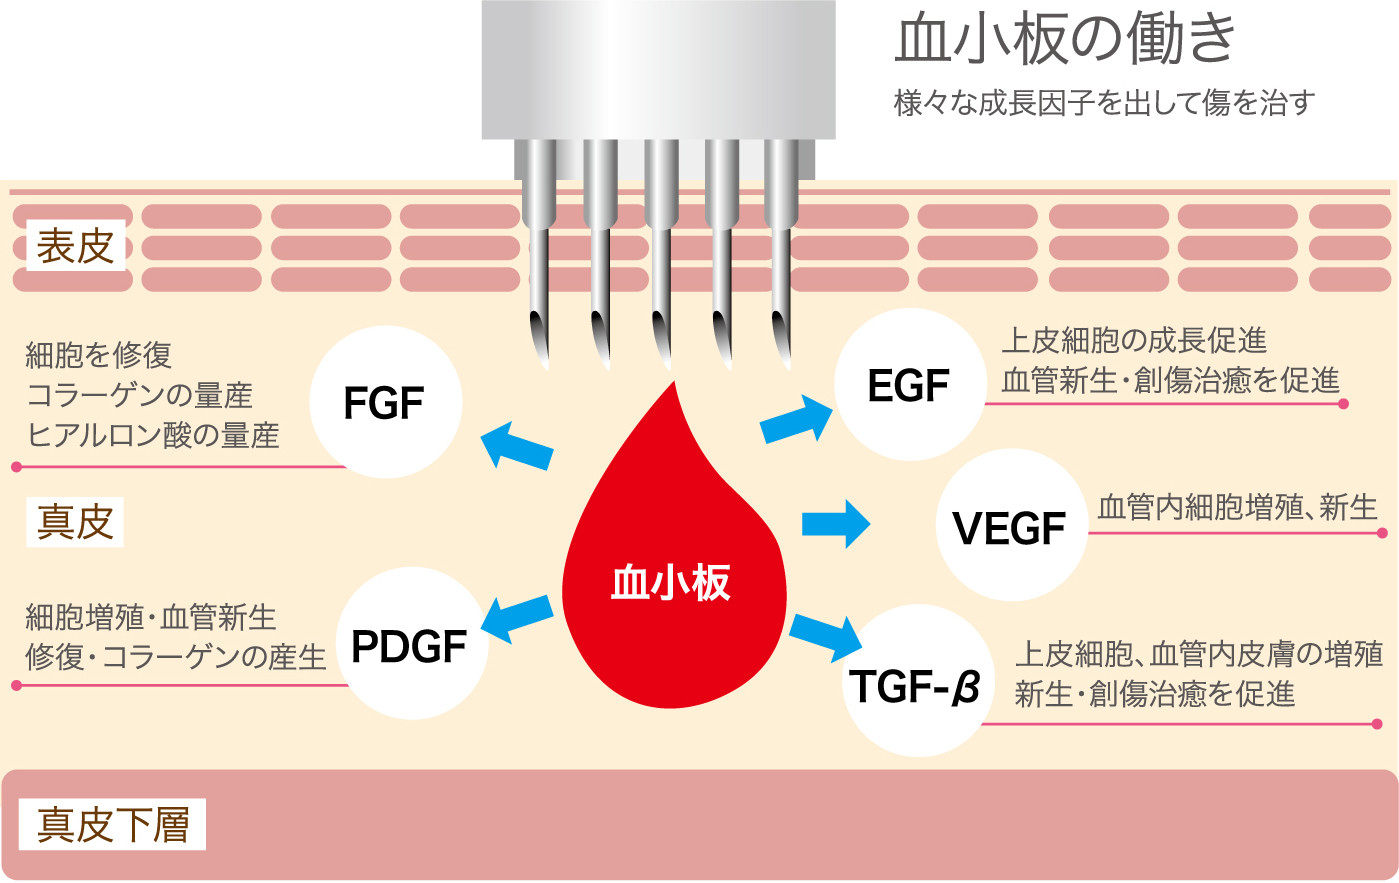 血小板の働き 様々な成長因子を出して傷を治す 表皮 細胞を修復コラーゲンの量産ヒアルロン酸の量産 FGF 真皮 細胞増殖・血管新生 修復・コラーゲンの産生 PDGF EGF 上皮細胞の成長促進血管新生・創傷治癒を促進 VEGF 血管内細胞増殖、新生 TGF-β 上皮細胞、血管内皮膚の増殖新生・創傷治癒を促進 真皮下層